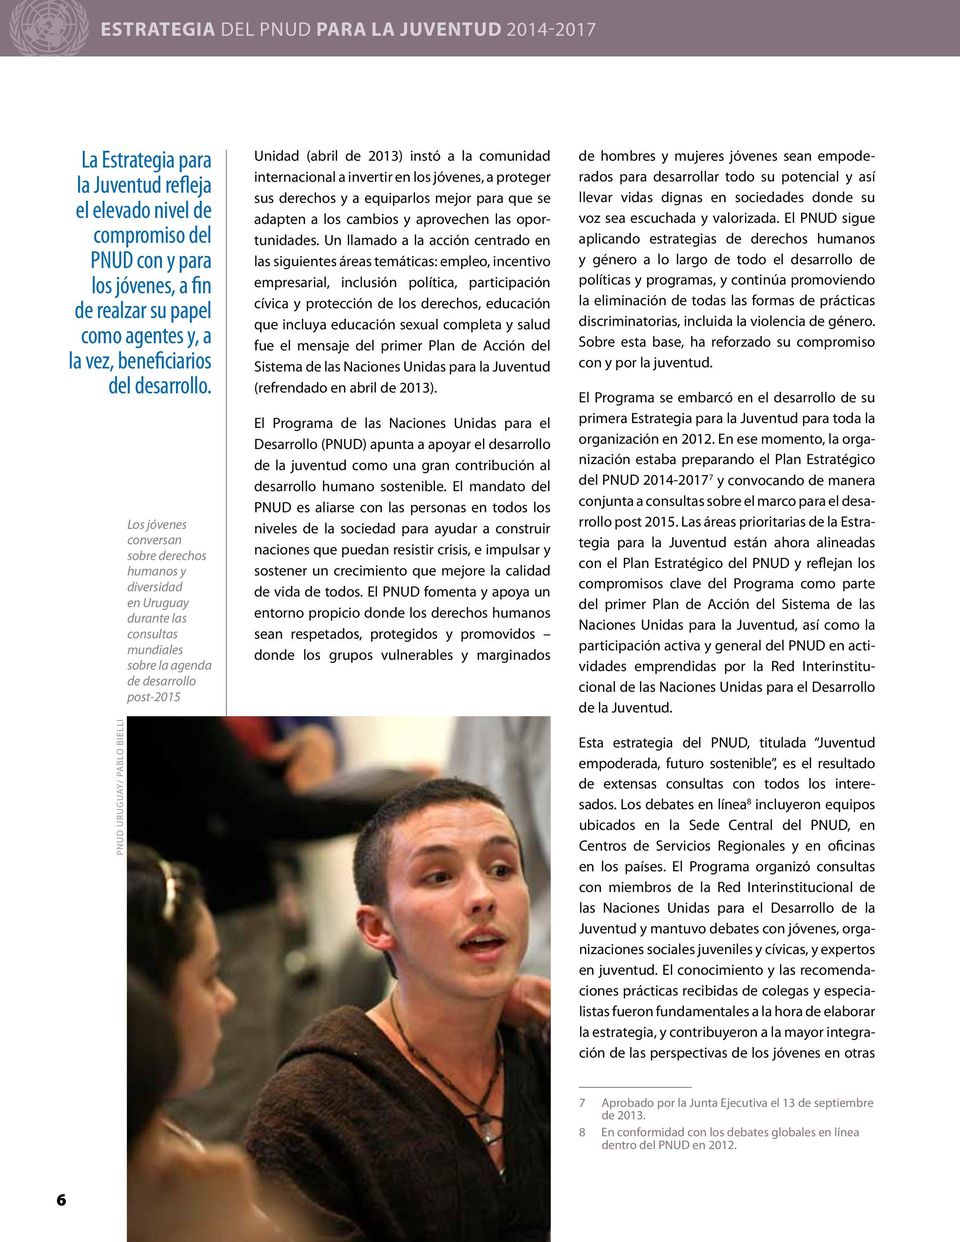 PNUD URUGUAY/ PABLO BIELLI Los jóvenes conversan sobre derechos humanos y diversidad en Uruguay durante las consultas mundiales sobre la agenda de desarrollo post-2015 Unidad (abril de 2013) instó a